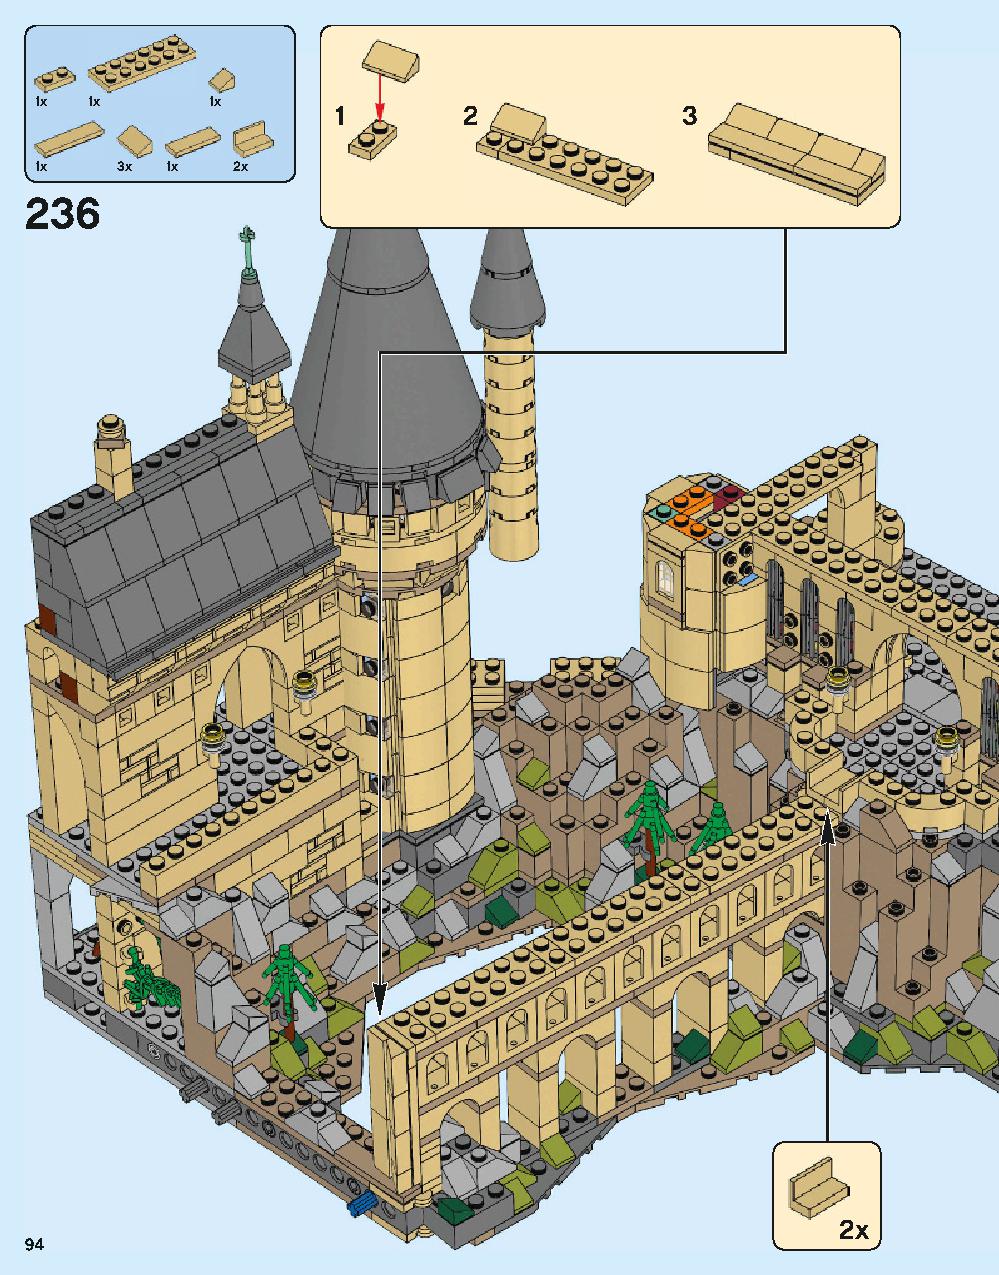 ホグワーツ城 71043 レゴの商品情報 レゴの説明書・組立方法 94 page